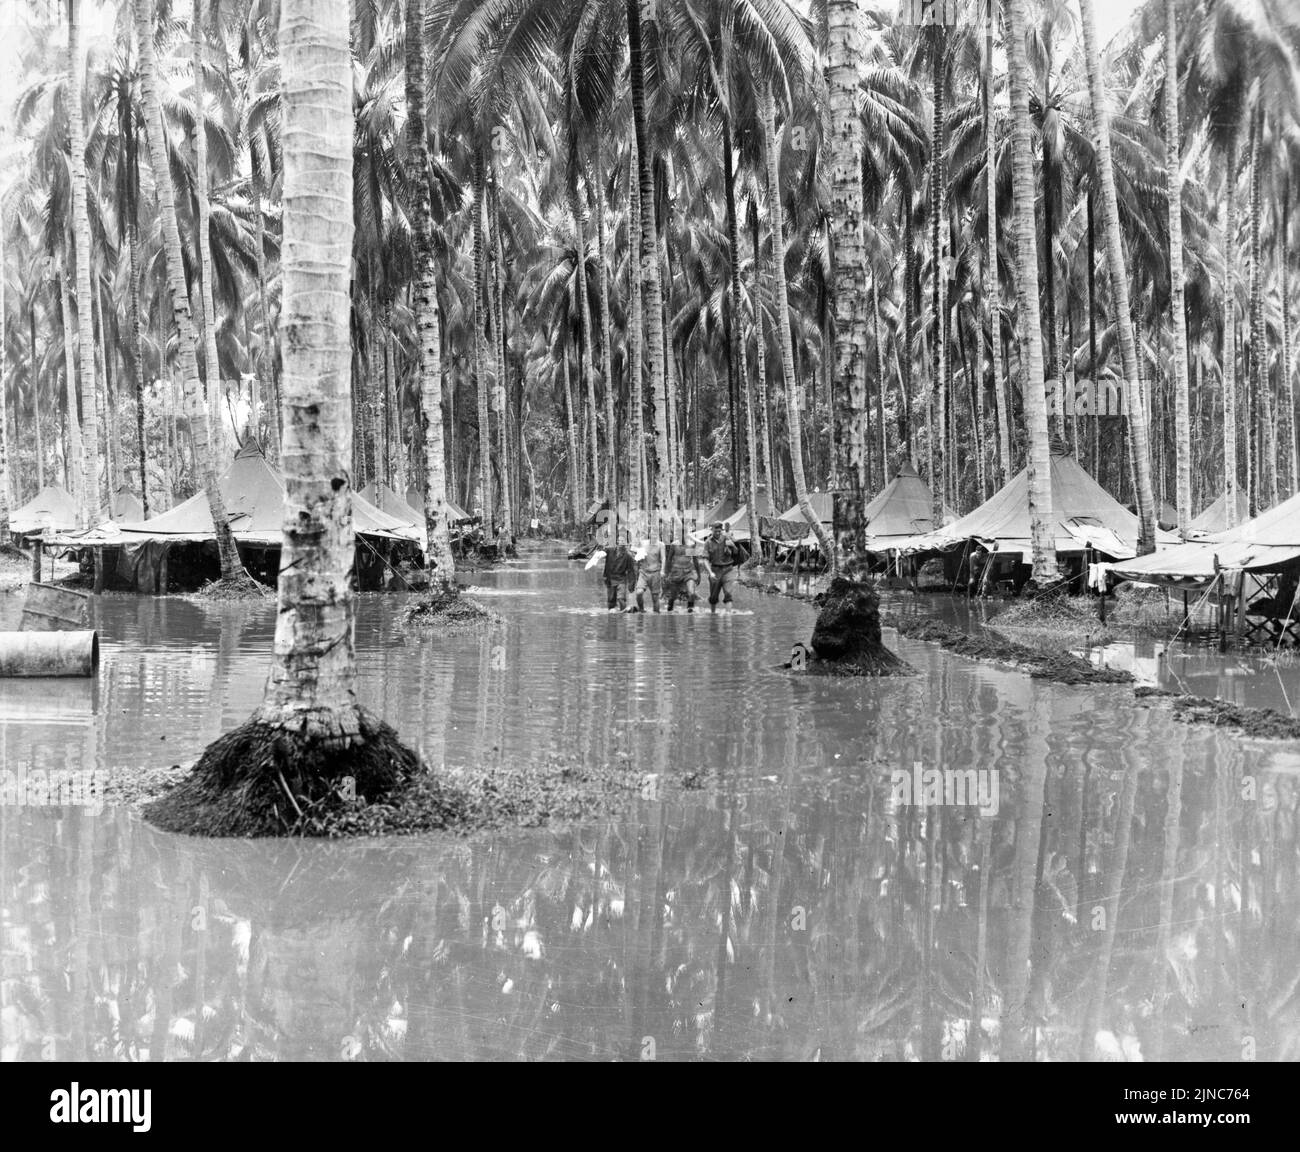 La tripulación aérea de la Fuerza Aérea de Cactus caminó a través del bosque de cocoteros inundado donde han colocado sus tiendas cerca de la pista de aterrizaje de Henderson Field en Guadalcanal. . La Fuerza Aérea de Cactus fue el apodo de la unidad de aviación que se basó en esta pista de aterrizaje durante WW2. Foto de stock